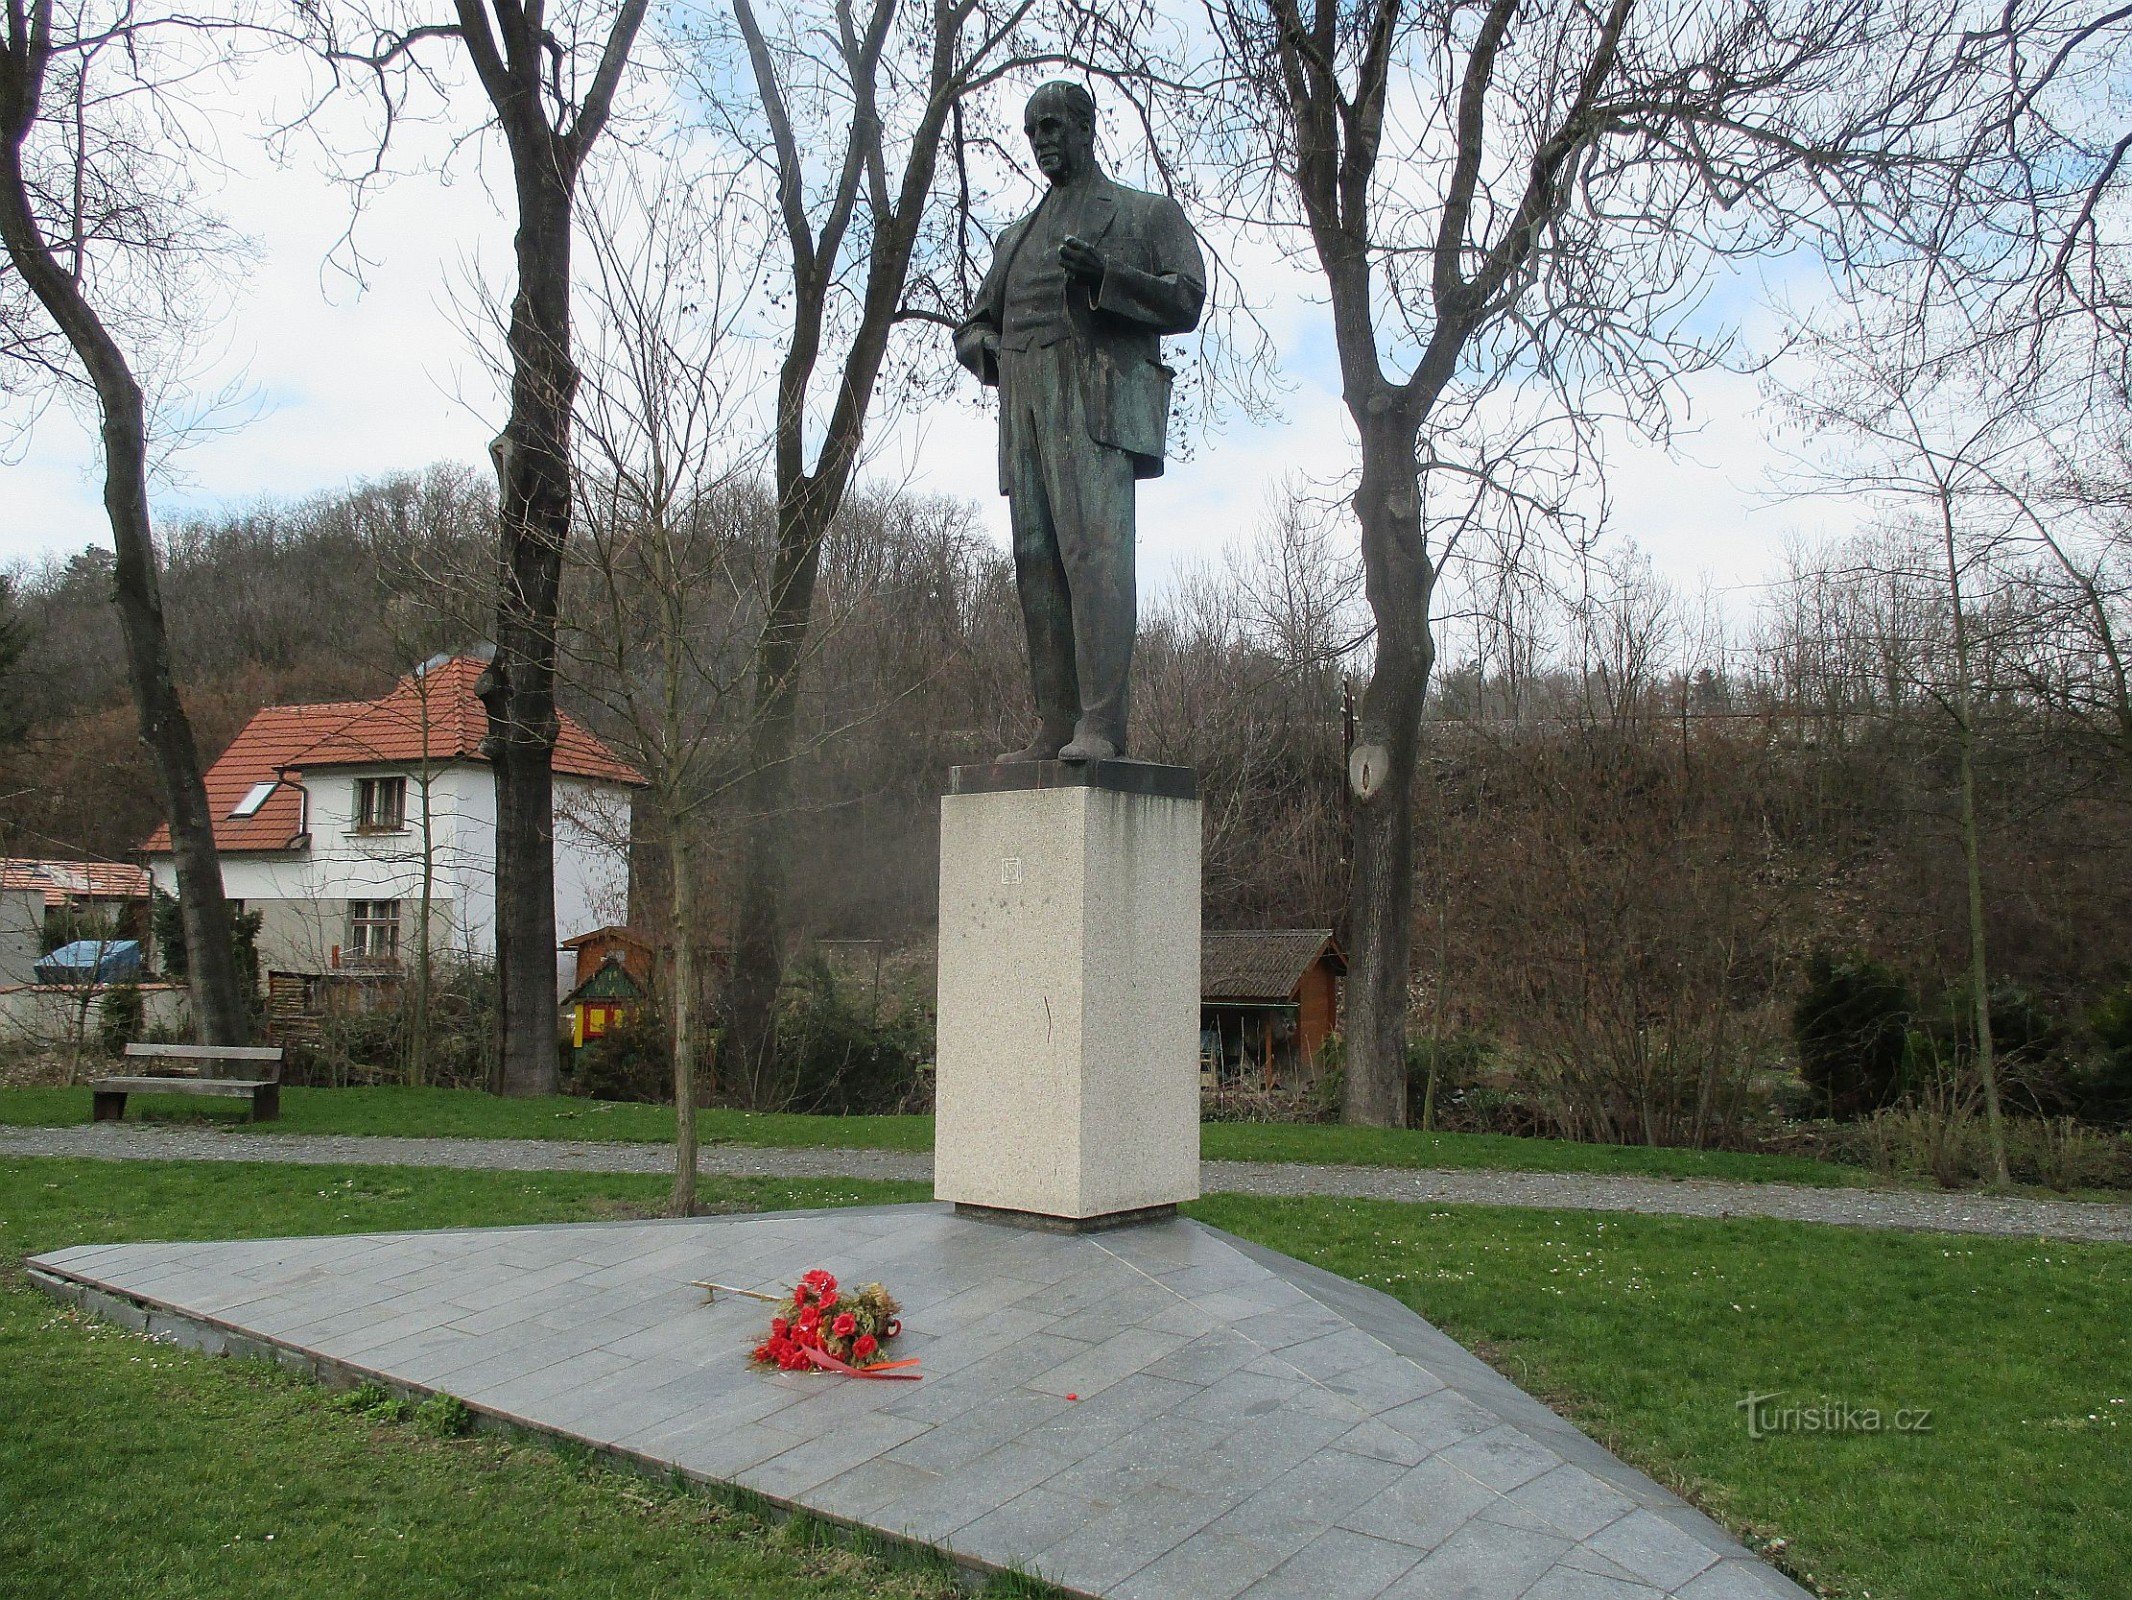 Đài tưởng niệm chủ tịch công nhân ở Zákolane